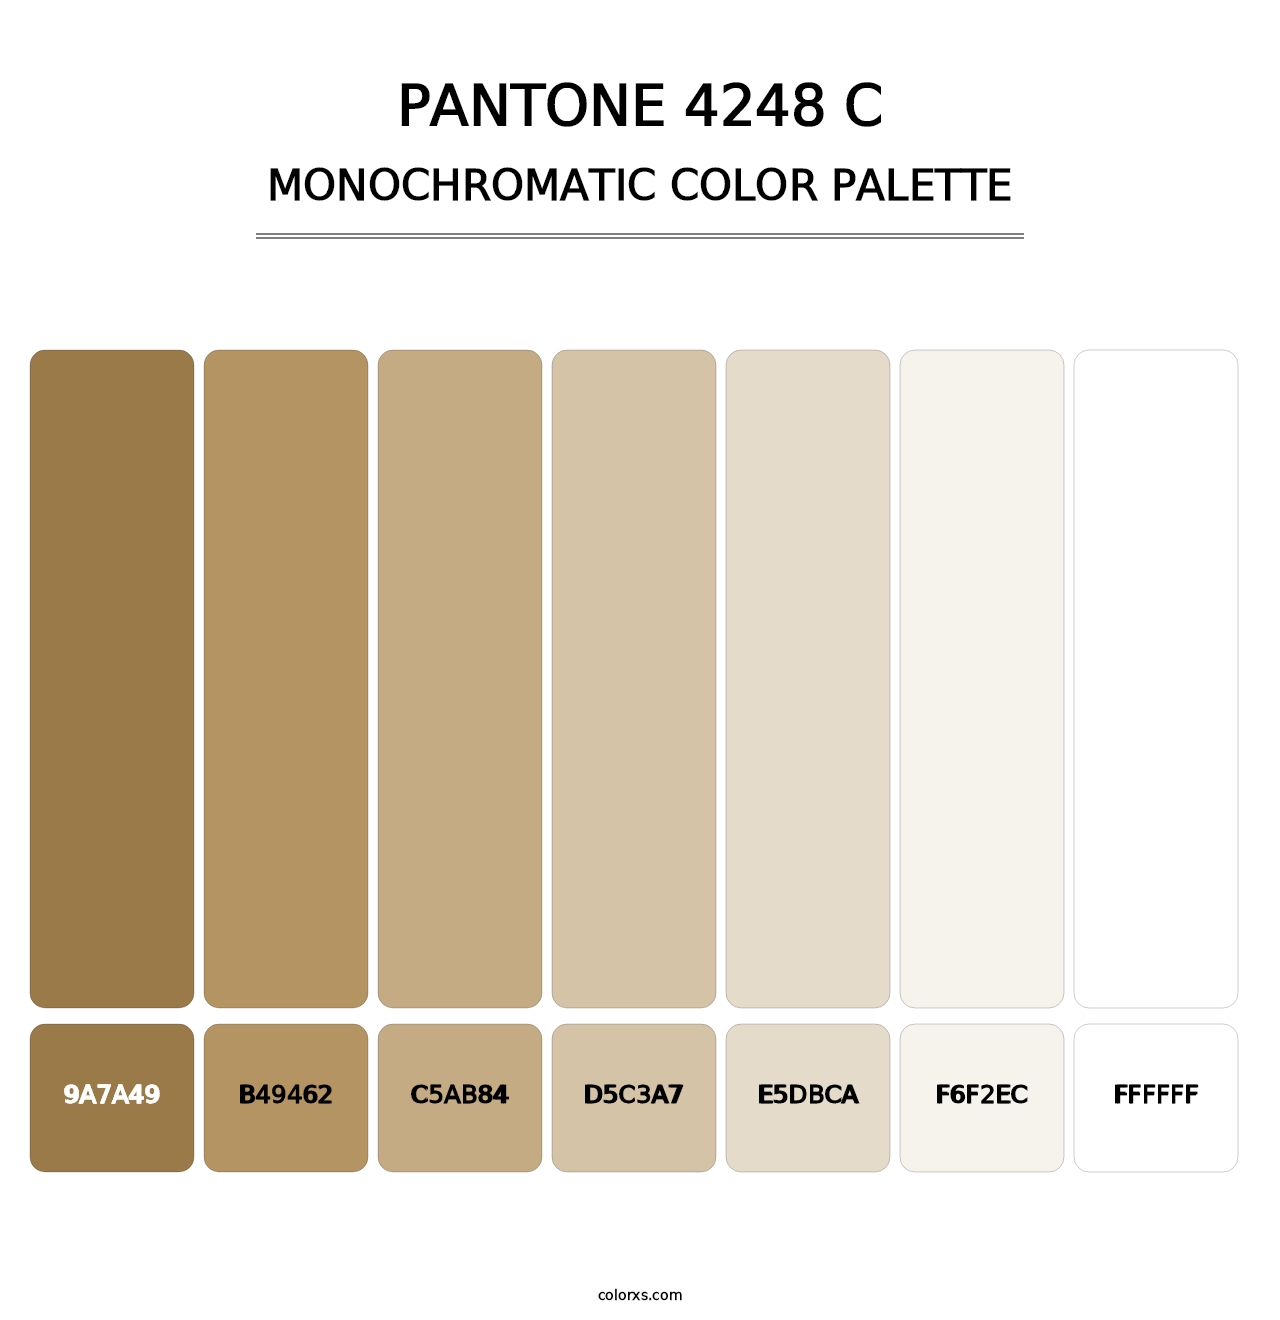 PANTONE 4248 C - Monochromatic Color Palette